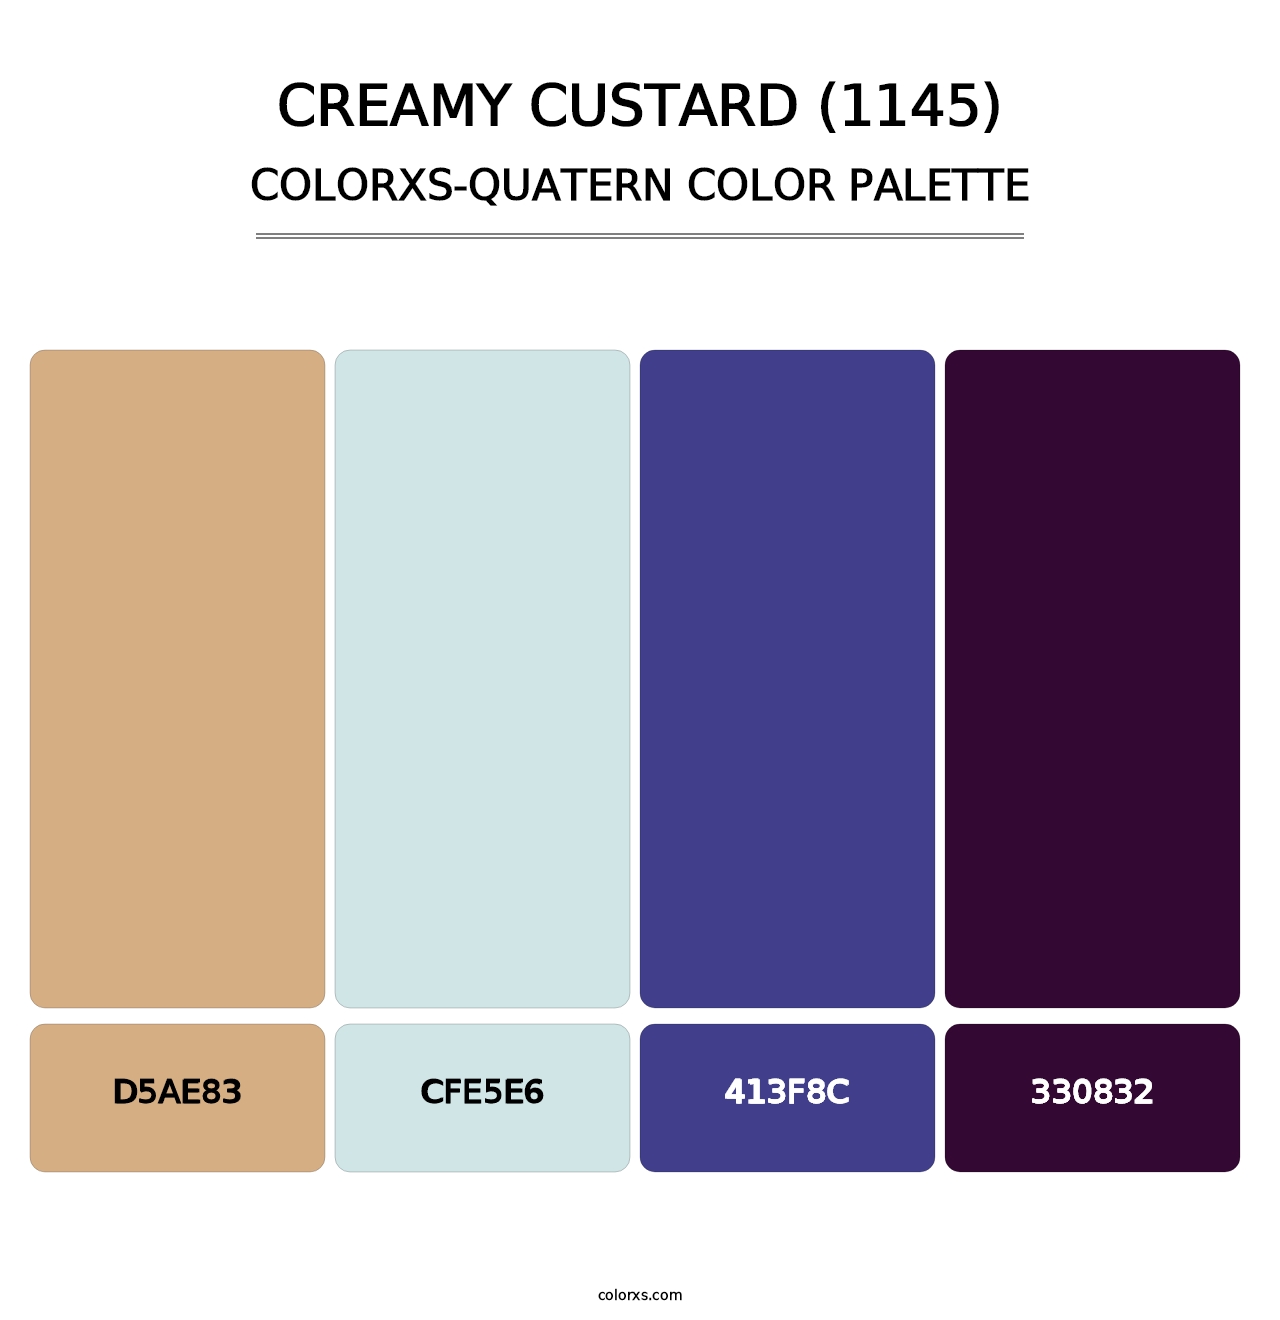 Creamy Custard (1145) - Colorxs Quatern Palette